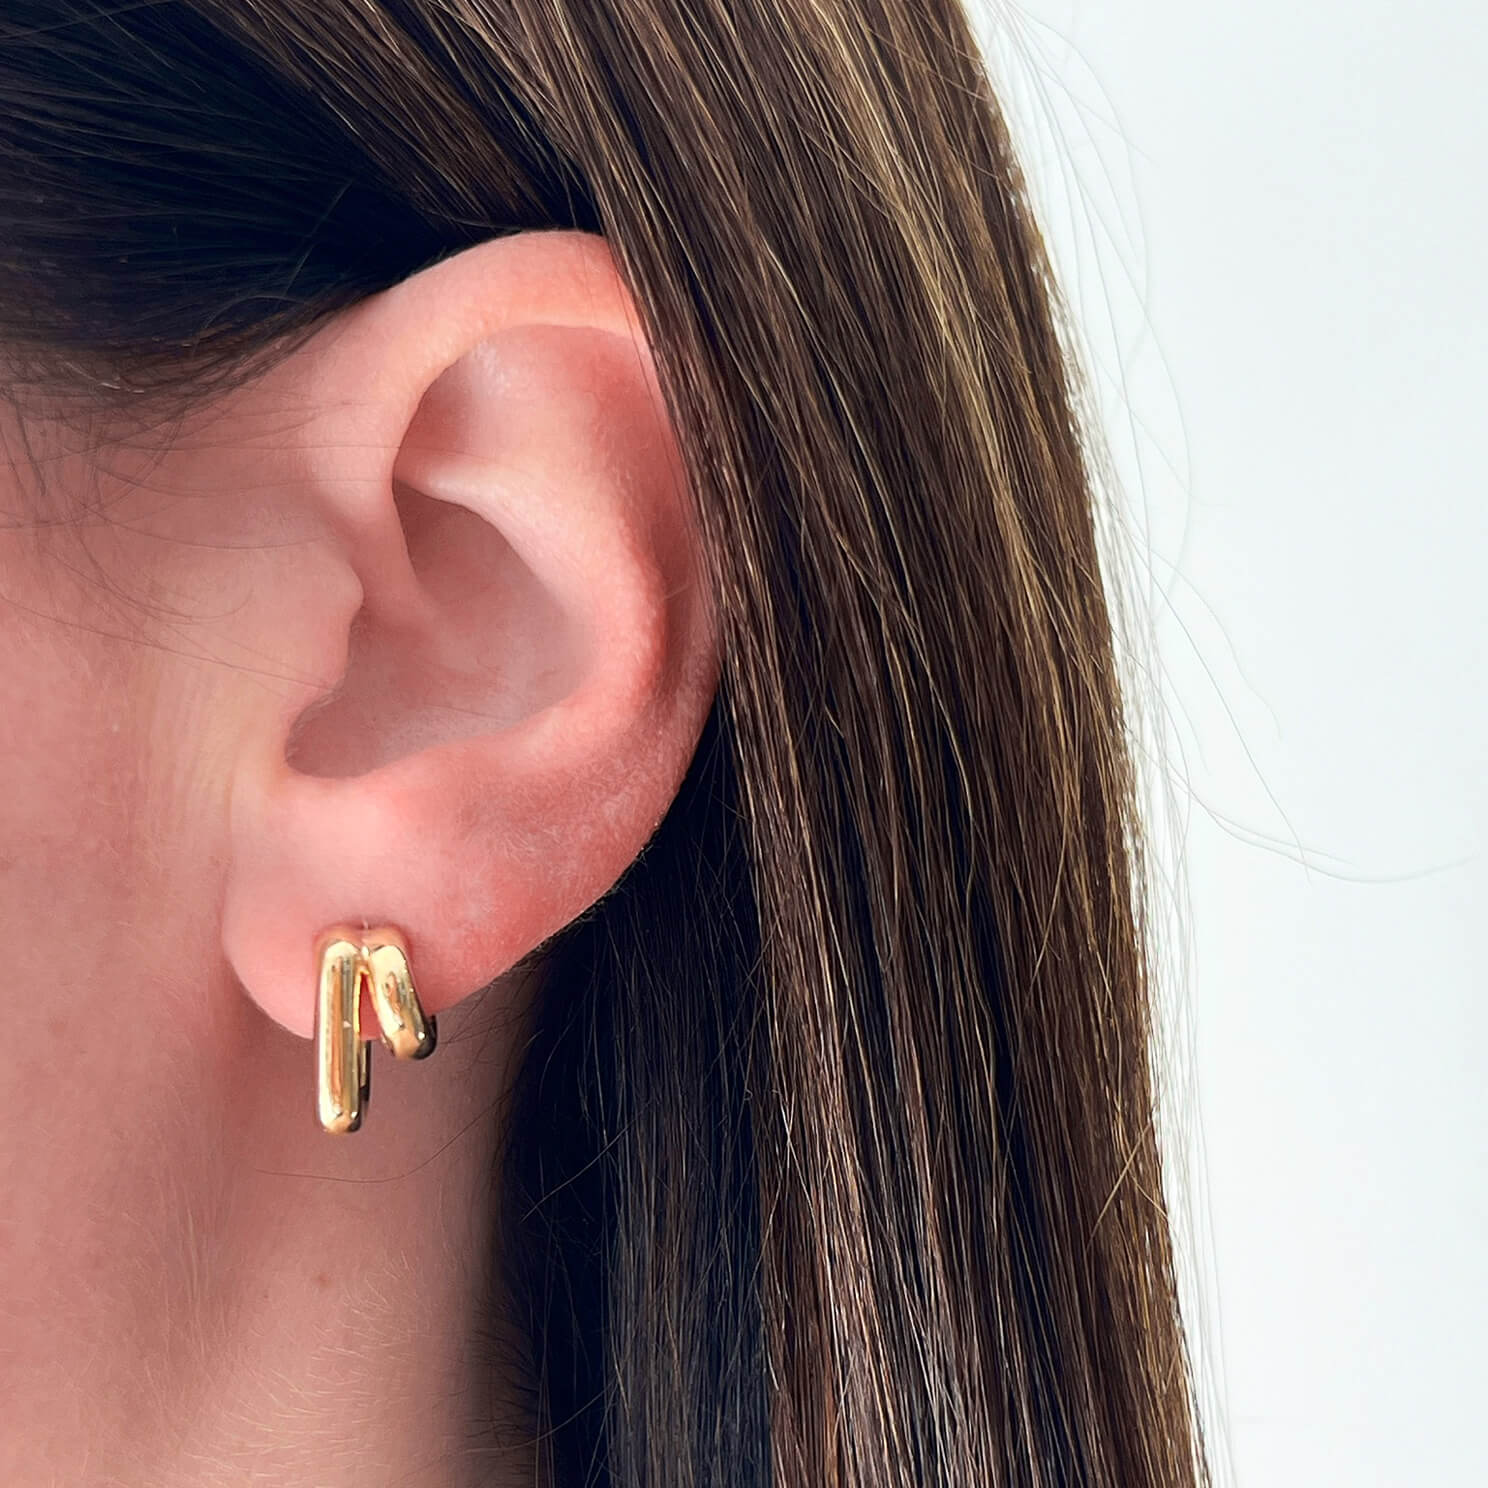 Double Gold Jumbo Huggie Earring in 14k yellow gold styled on ear lobe of model